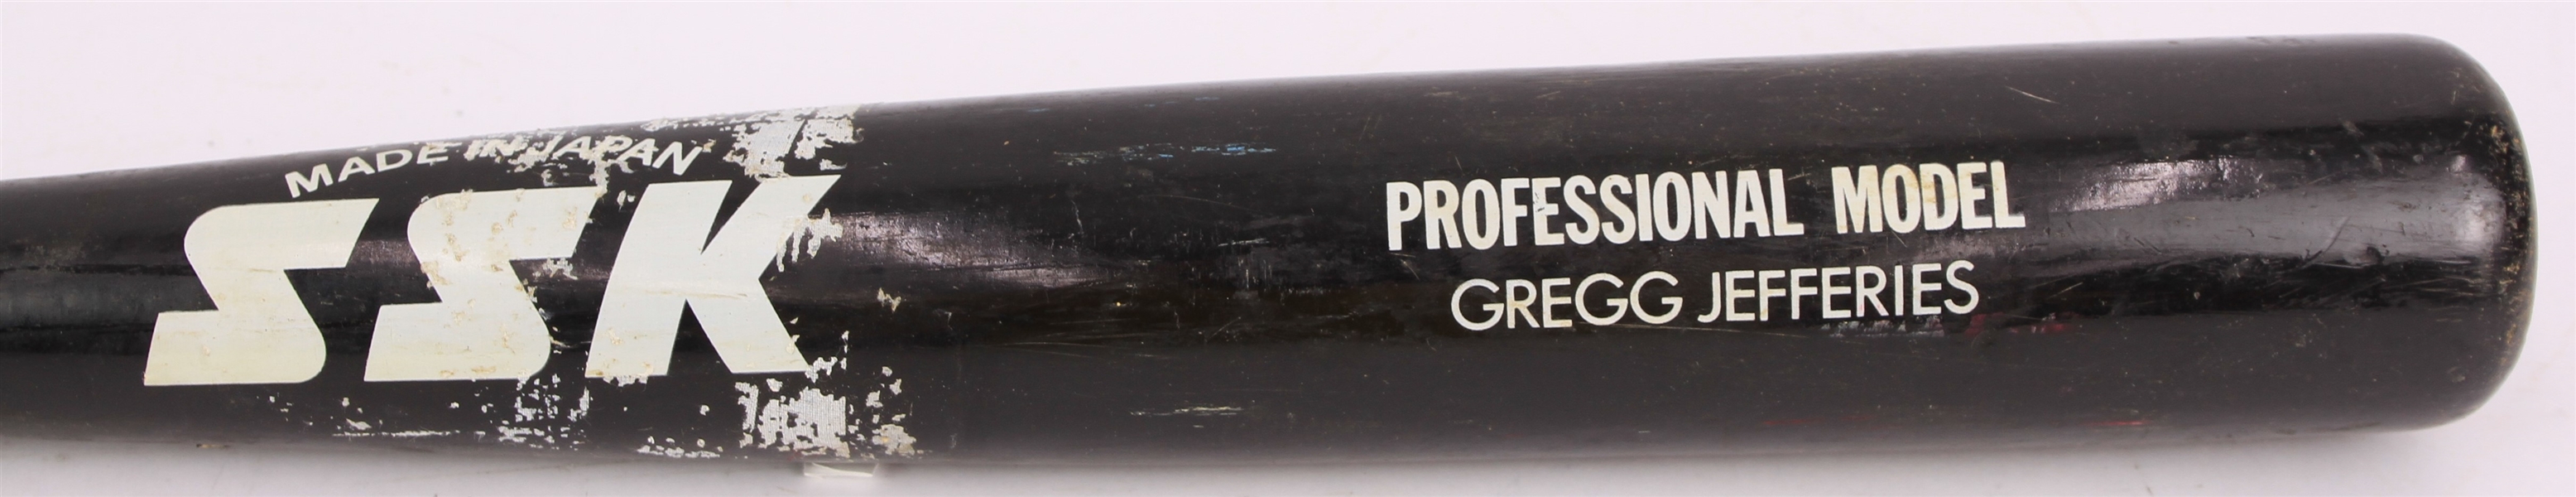 1987-89 Gregg Jefferies New York Mets SSK Professional Model Game Used Bat (MEARS LOA/Mets Employee LOA)